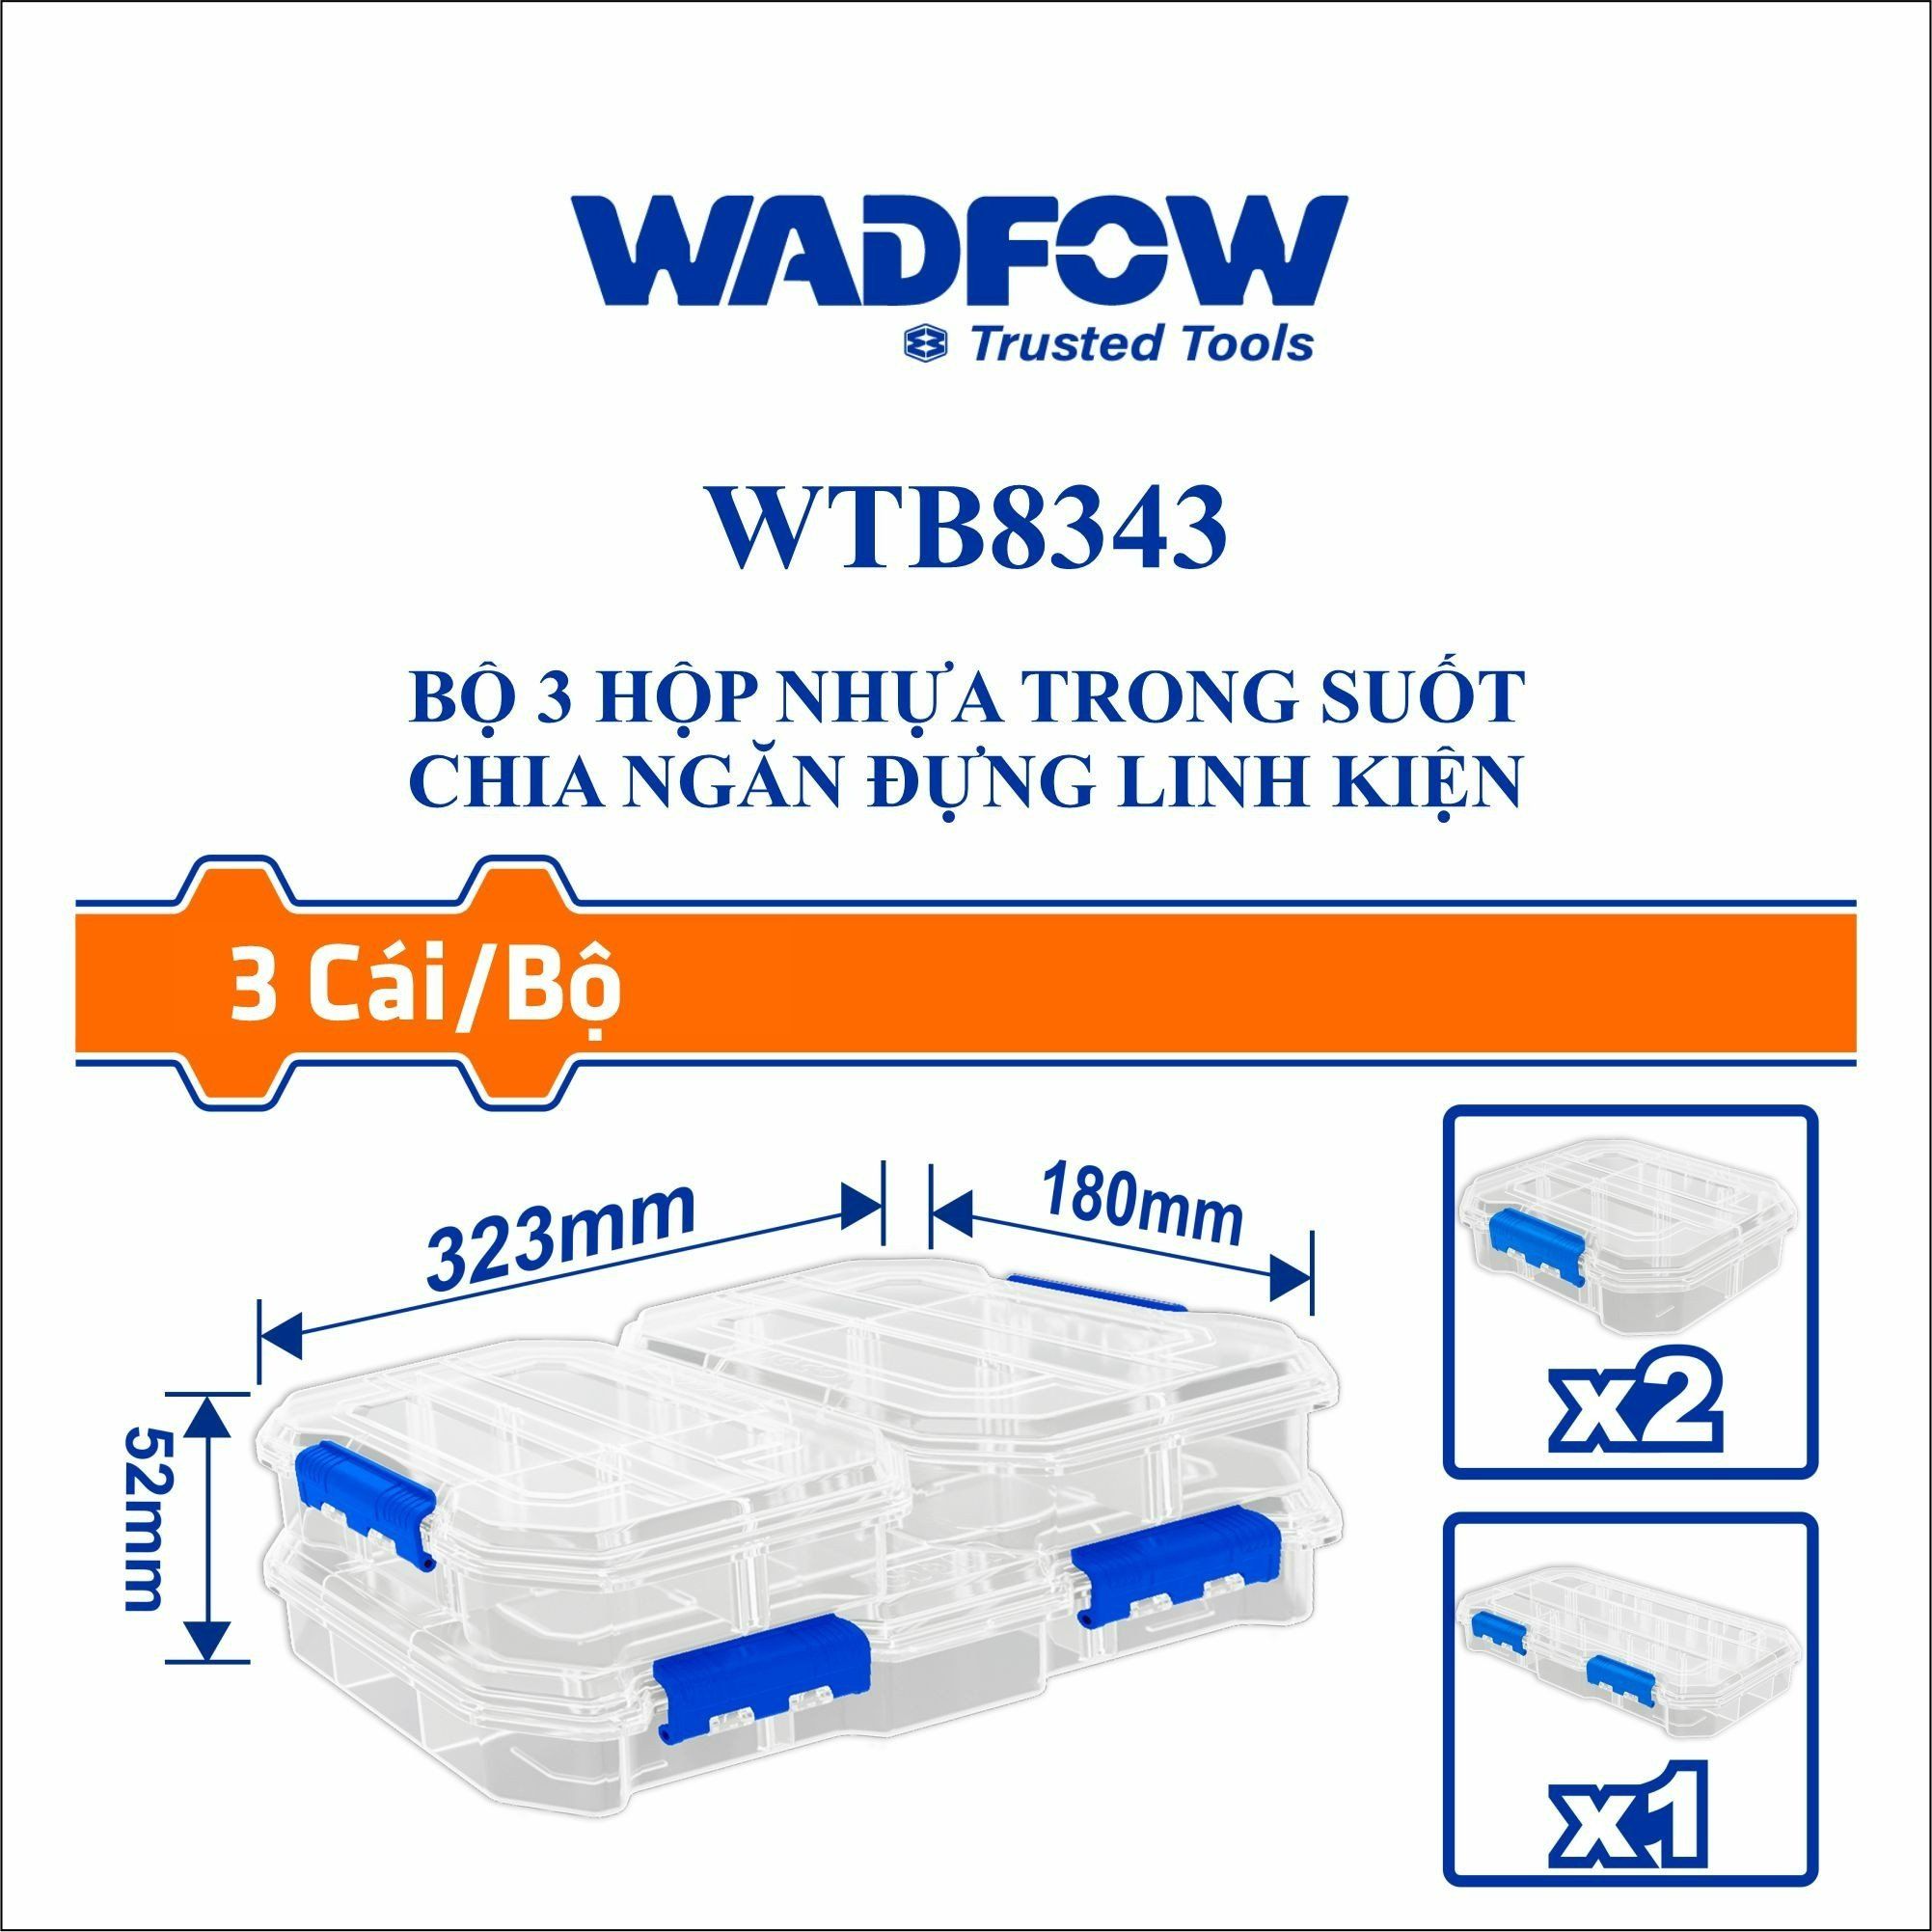  Bộ 3 Hộp nhựa trong suốt chia ngăn đựng linh kiện WADFOW WTB8343 